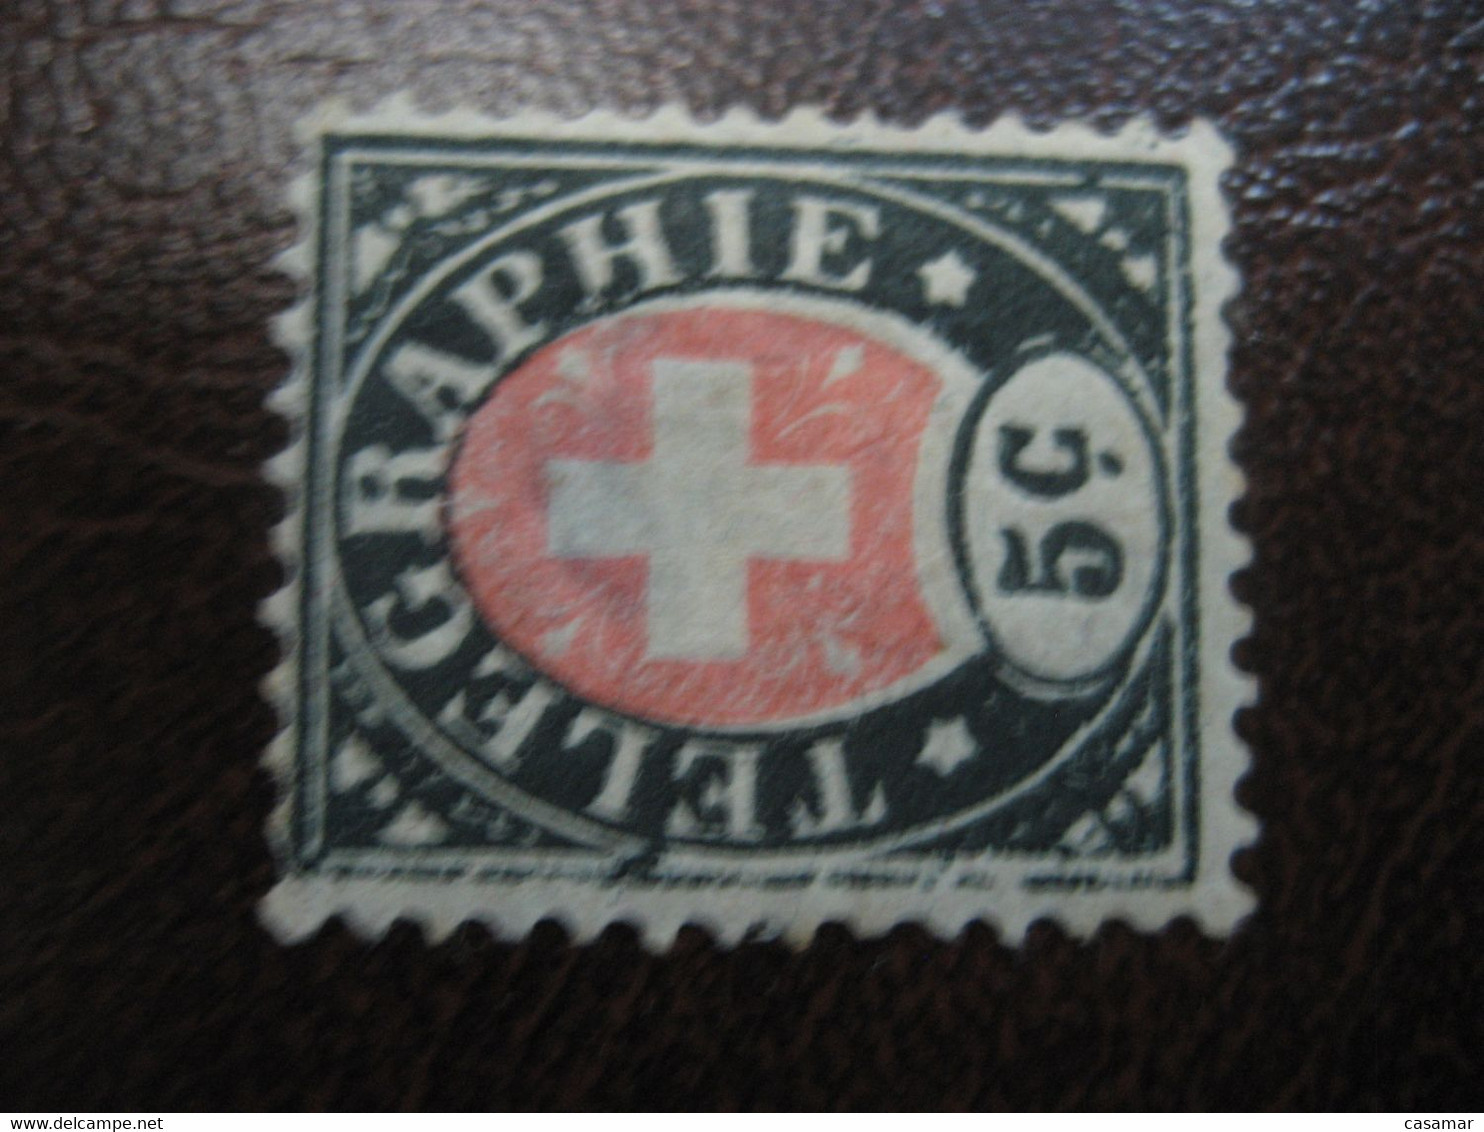 5c TELEGRAPHIE Telegraph SWITZERLAND Fiscal Revenue Suisse - Telegrafo